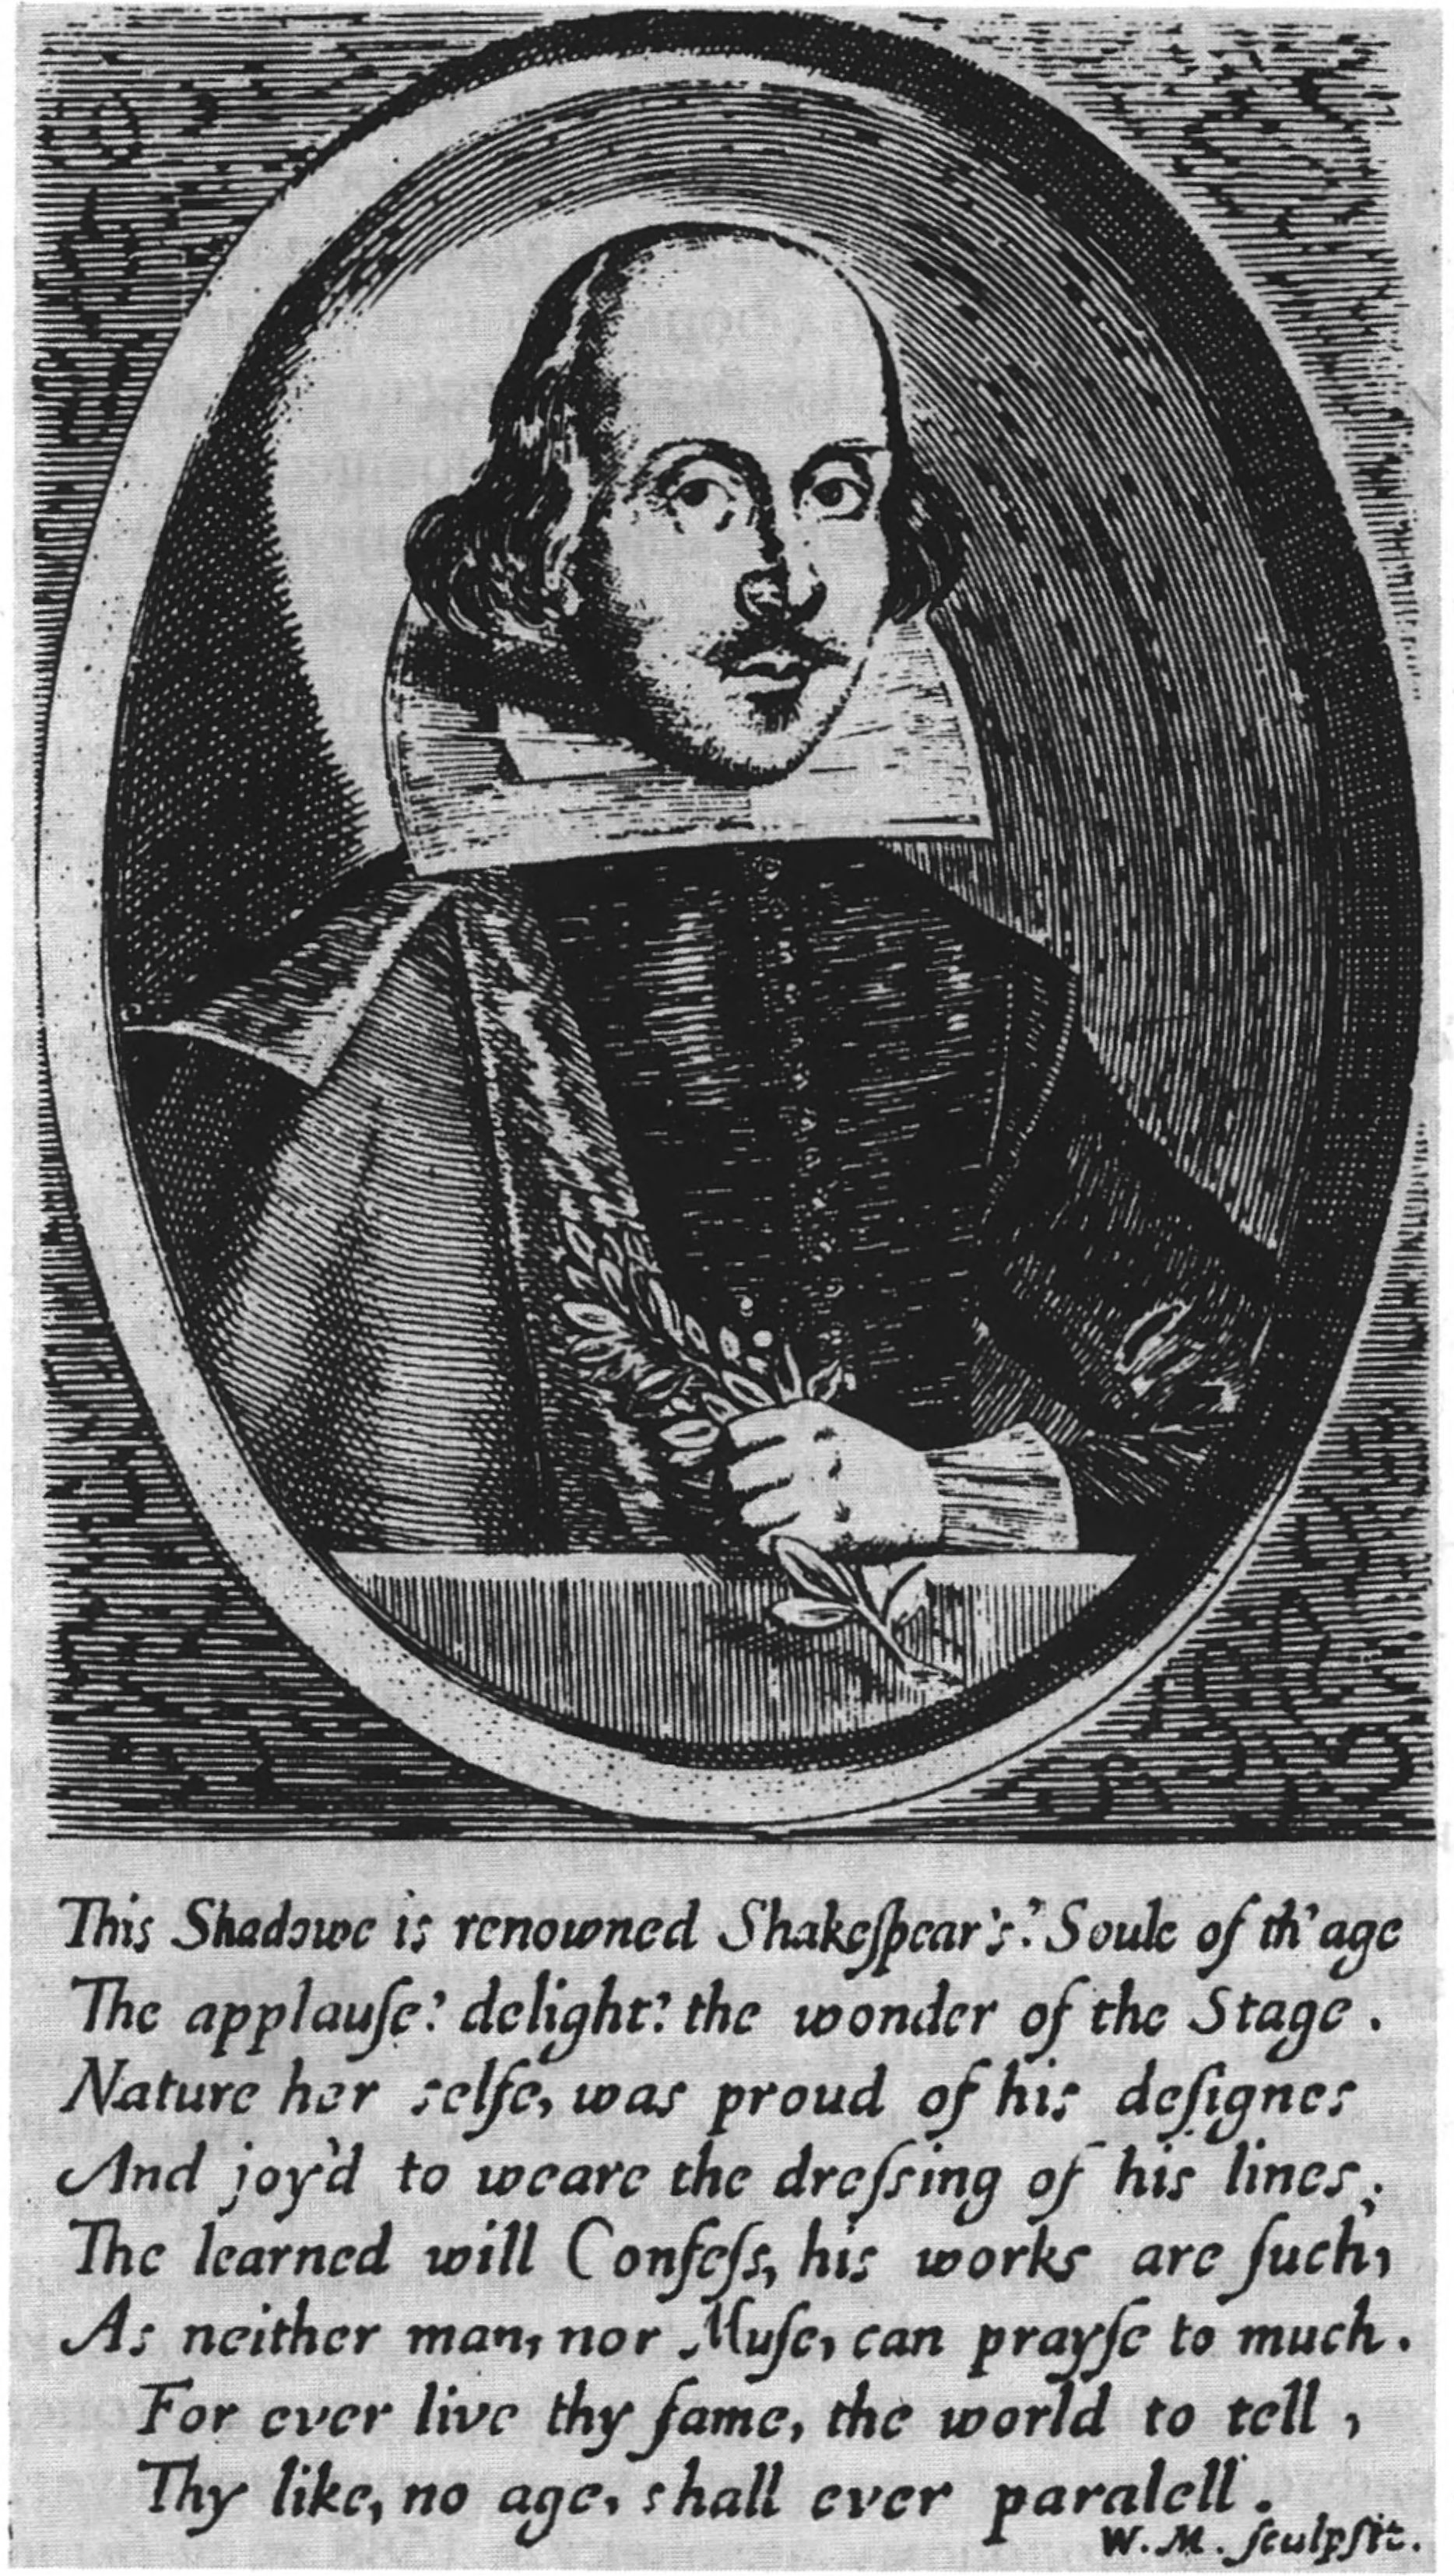 Шекспир. Гравюра в издании Джона Бенсона шекспировских поэм и сонетов. 1640 г. Что означают три вопросительных знака?